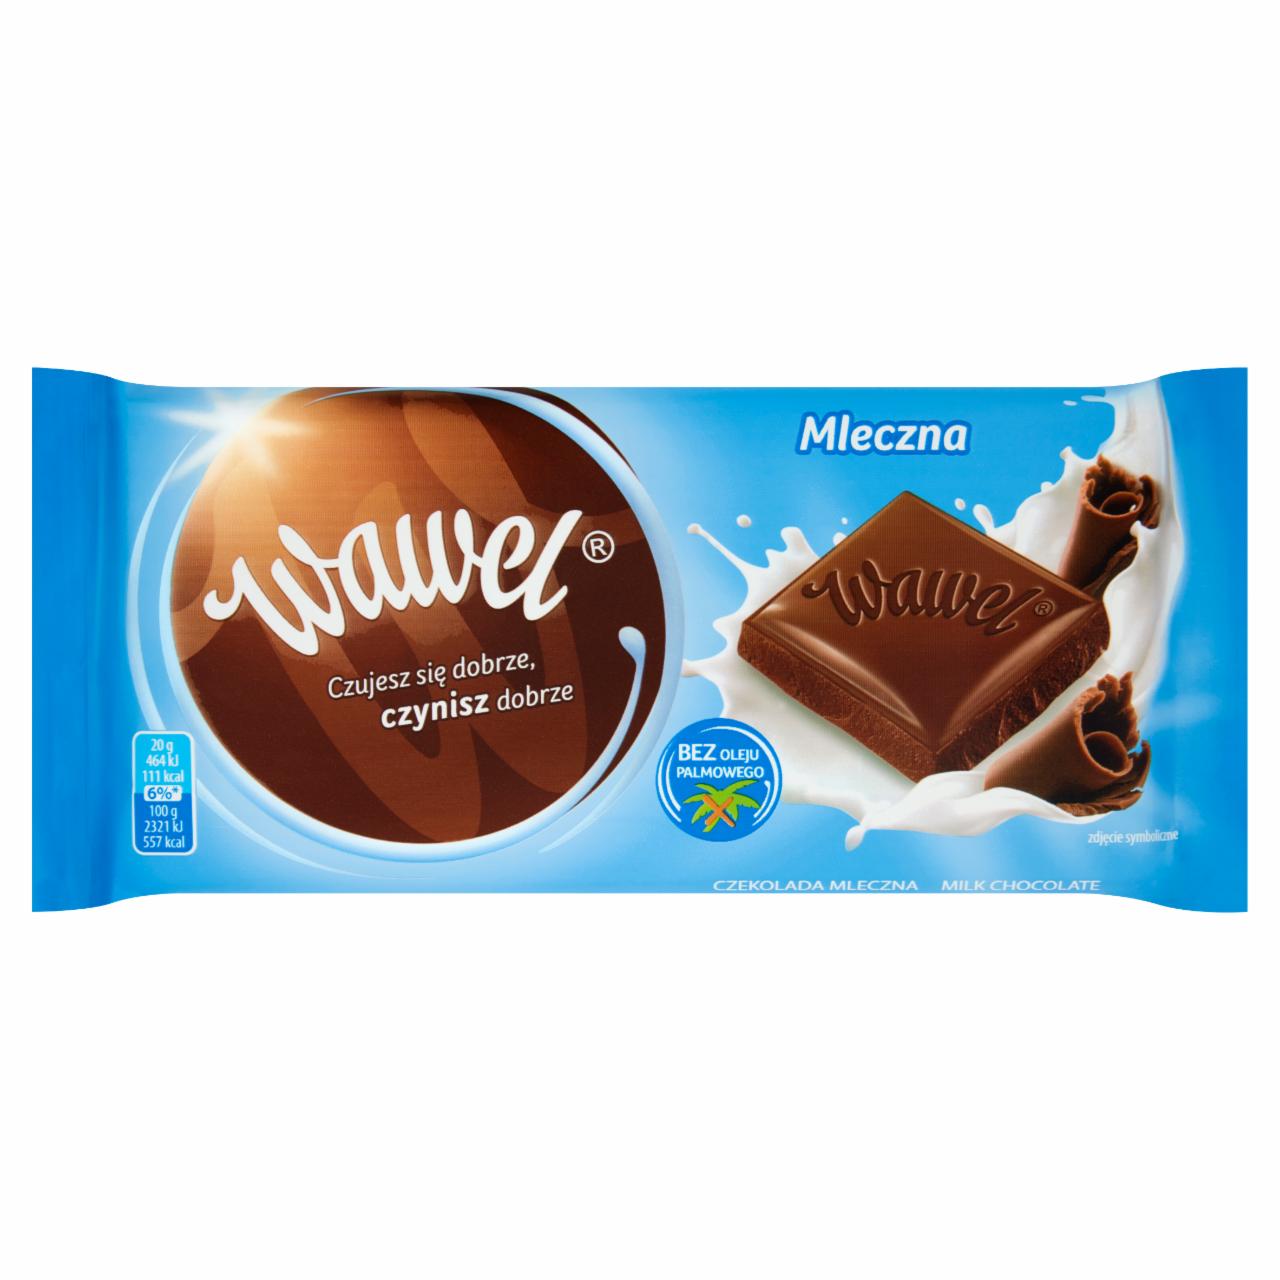 Фото - Молочный шоколад Mleczna Wawel